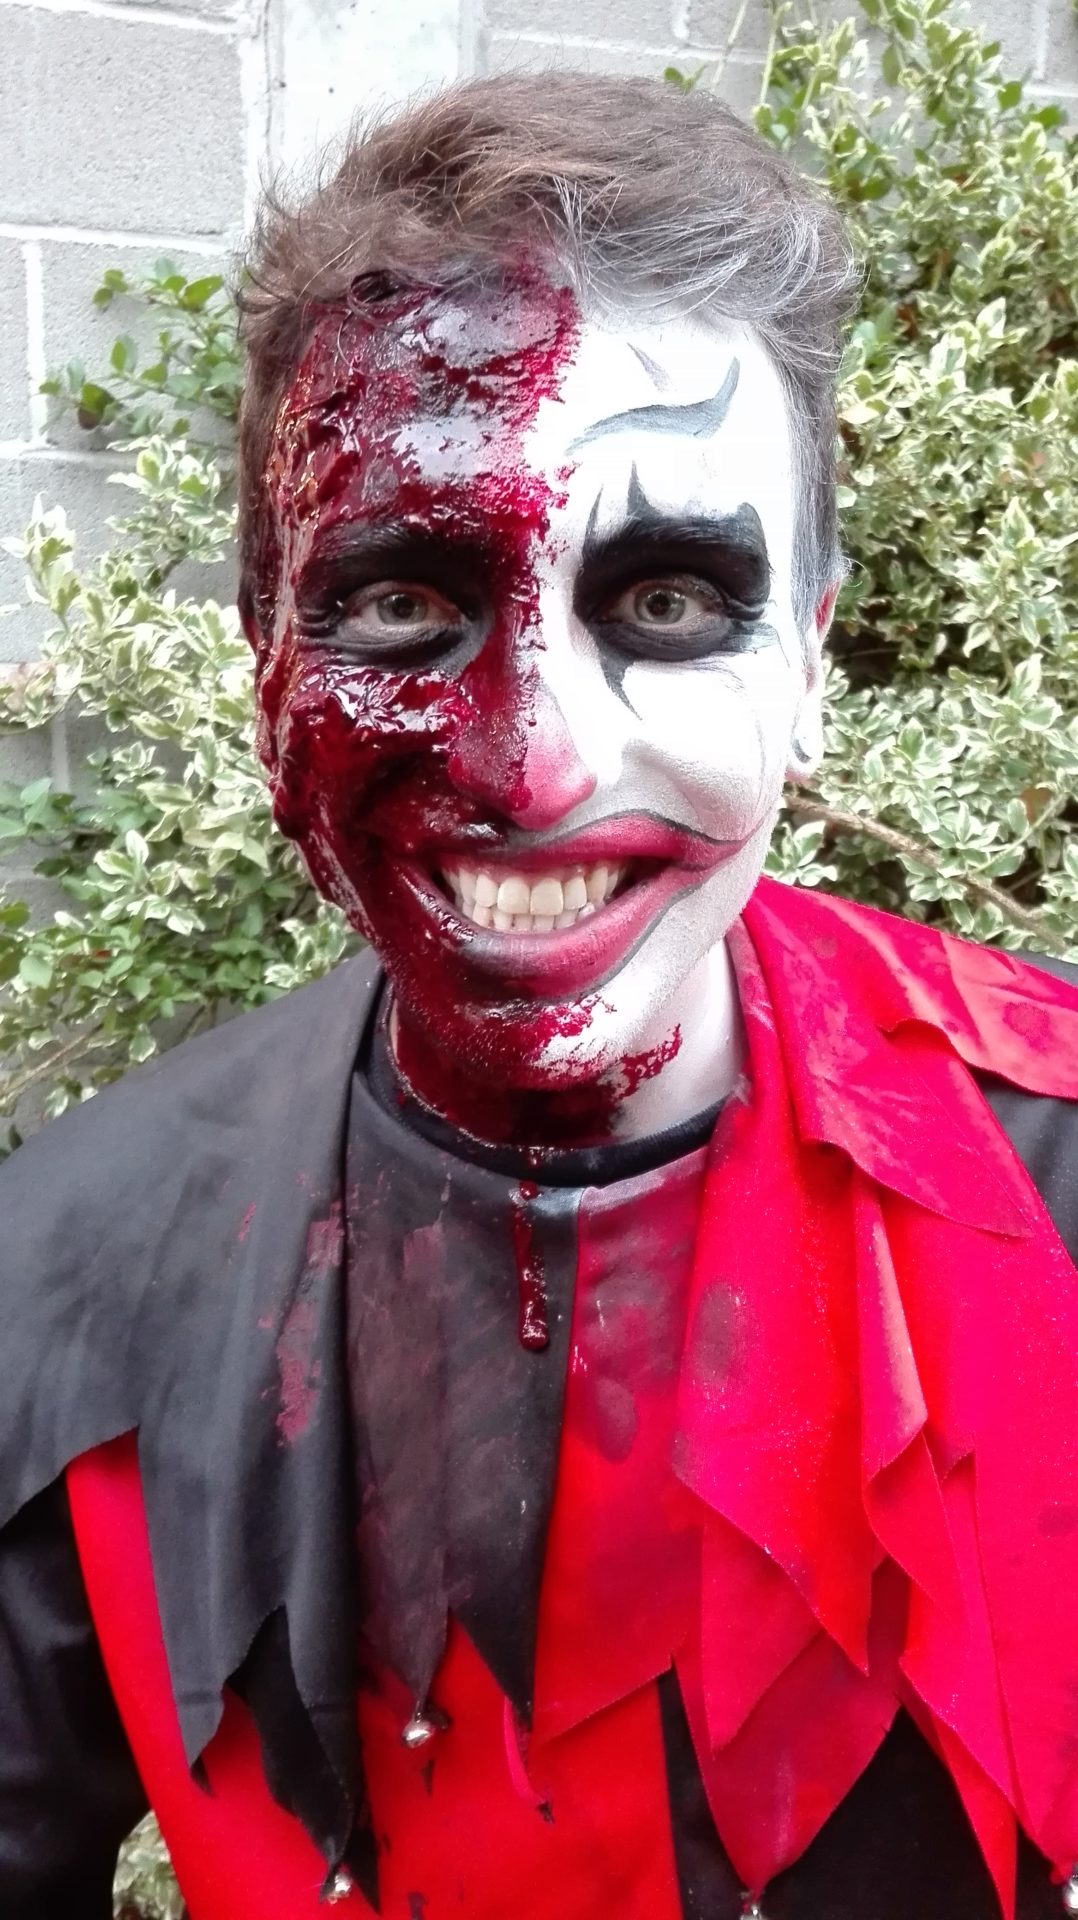 Maquillage de clown pour Halloween réalisé au fard à l'eau et au latex